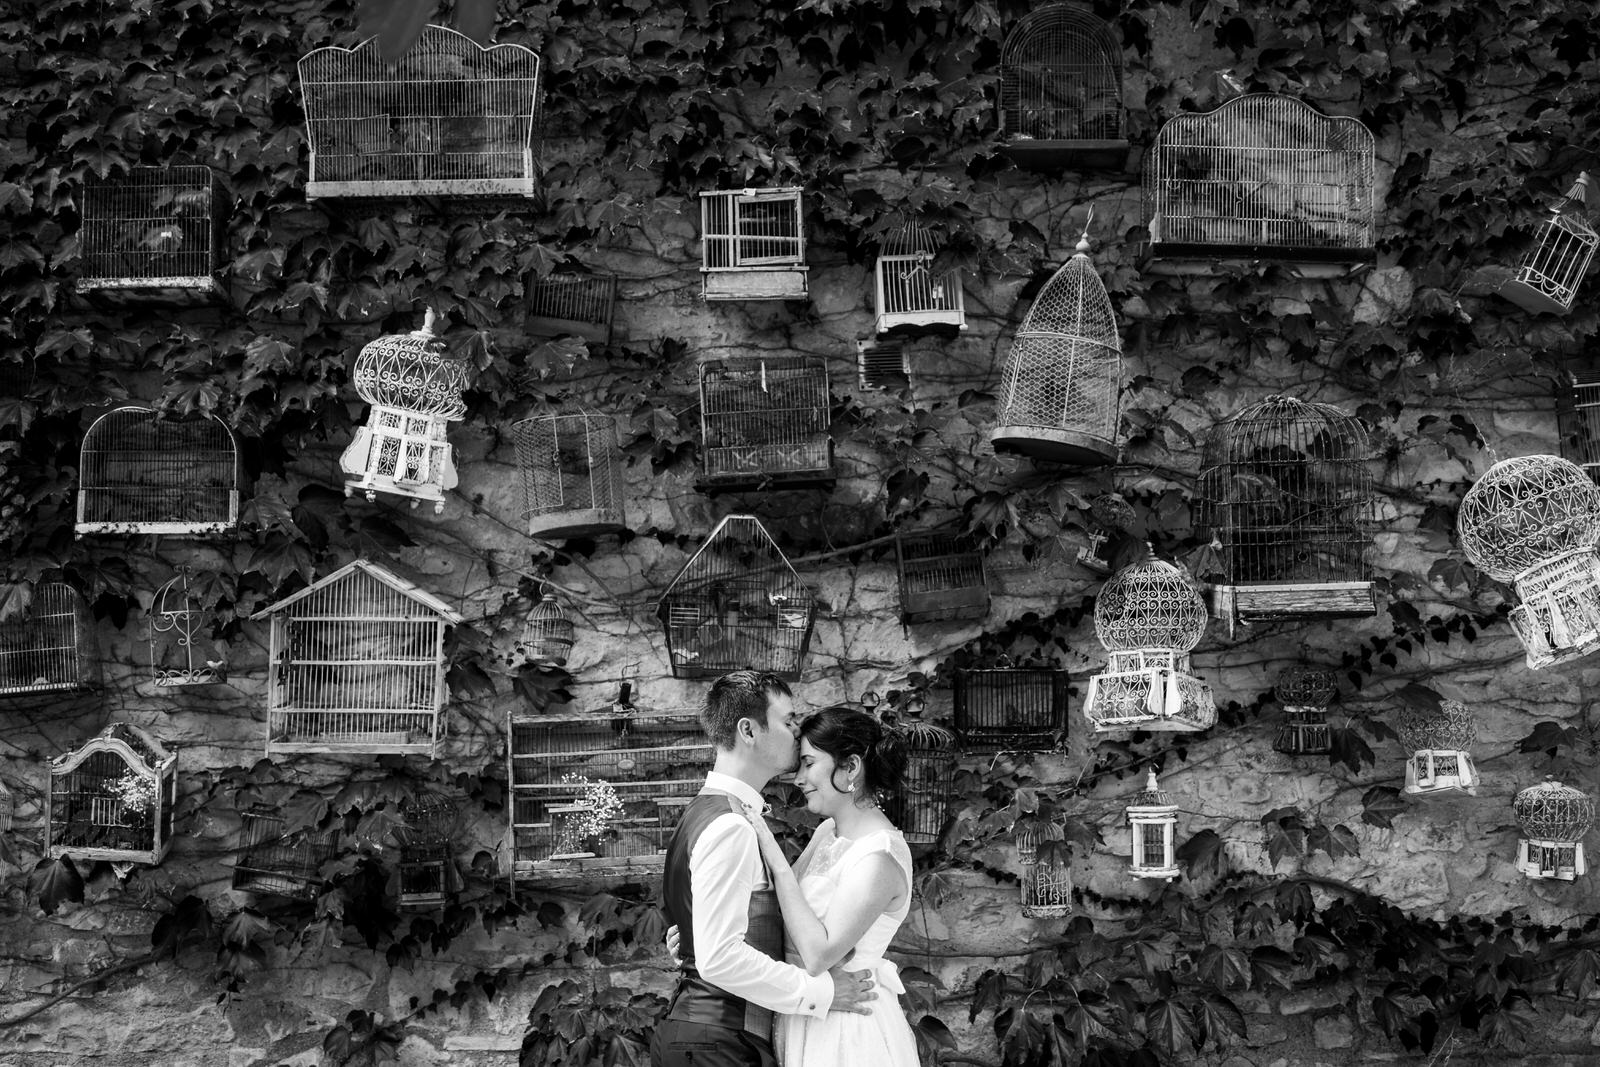 le marié embrasse la mariée sur le front devant un mur de végétation avec des cages à oiseaux accrochées au mur